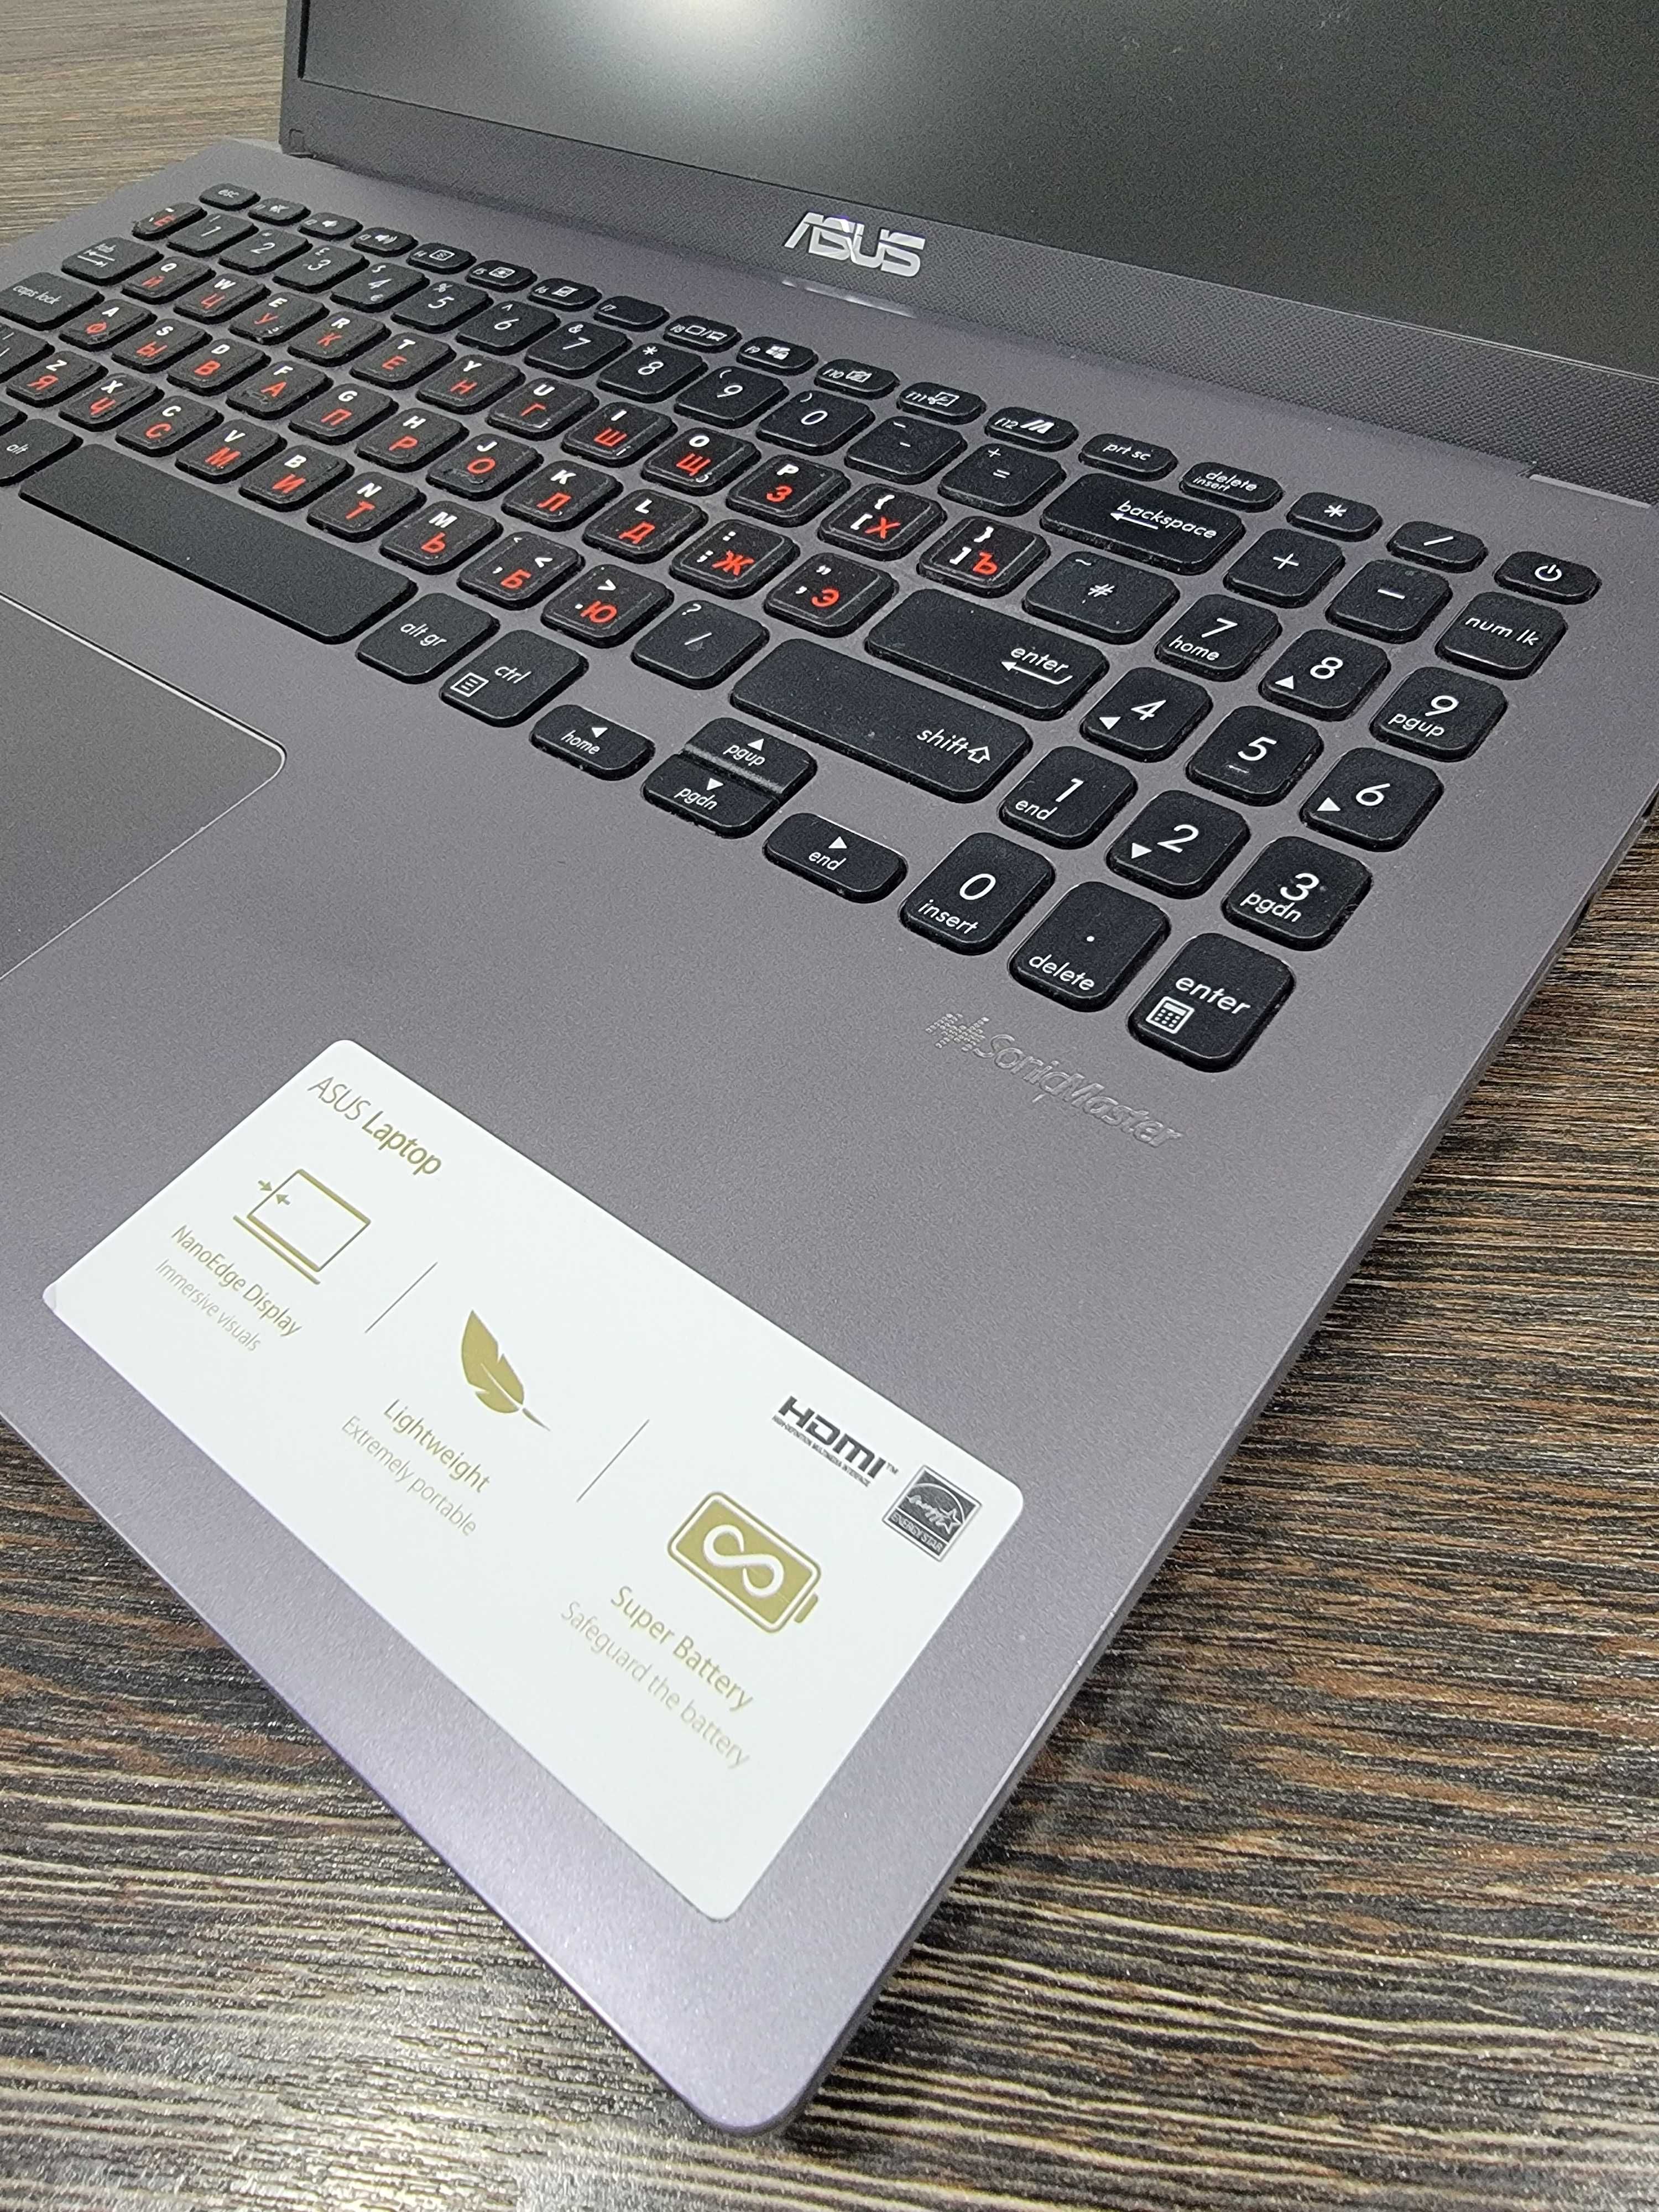 тонкий ноутбук Asus X509J, для офисных программ и интернета, в хорошем